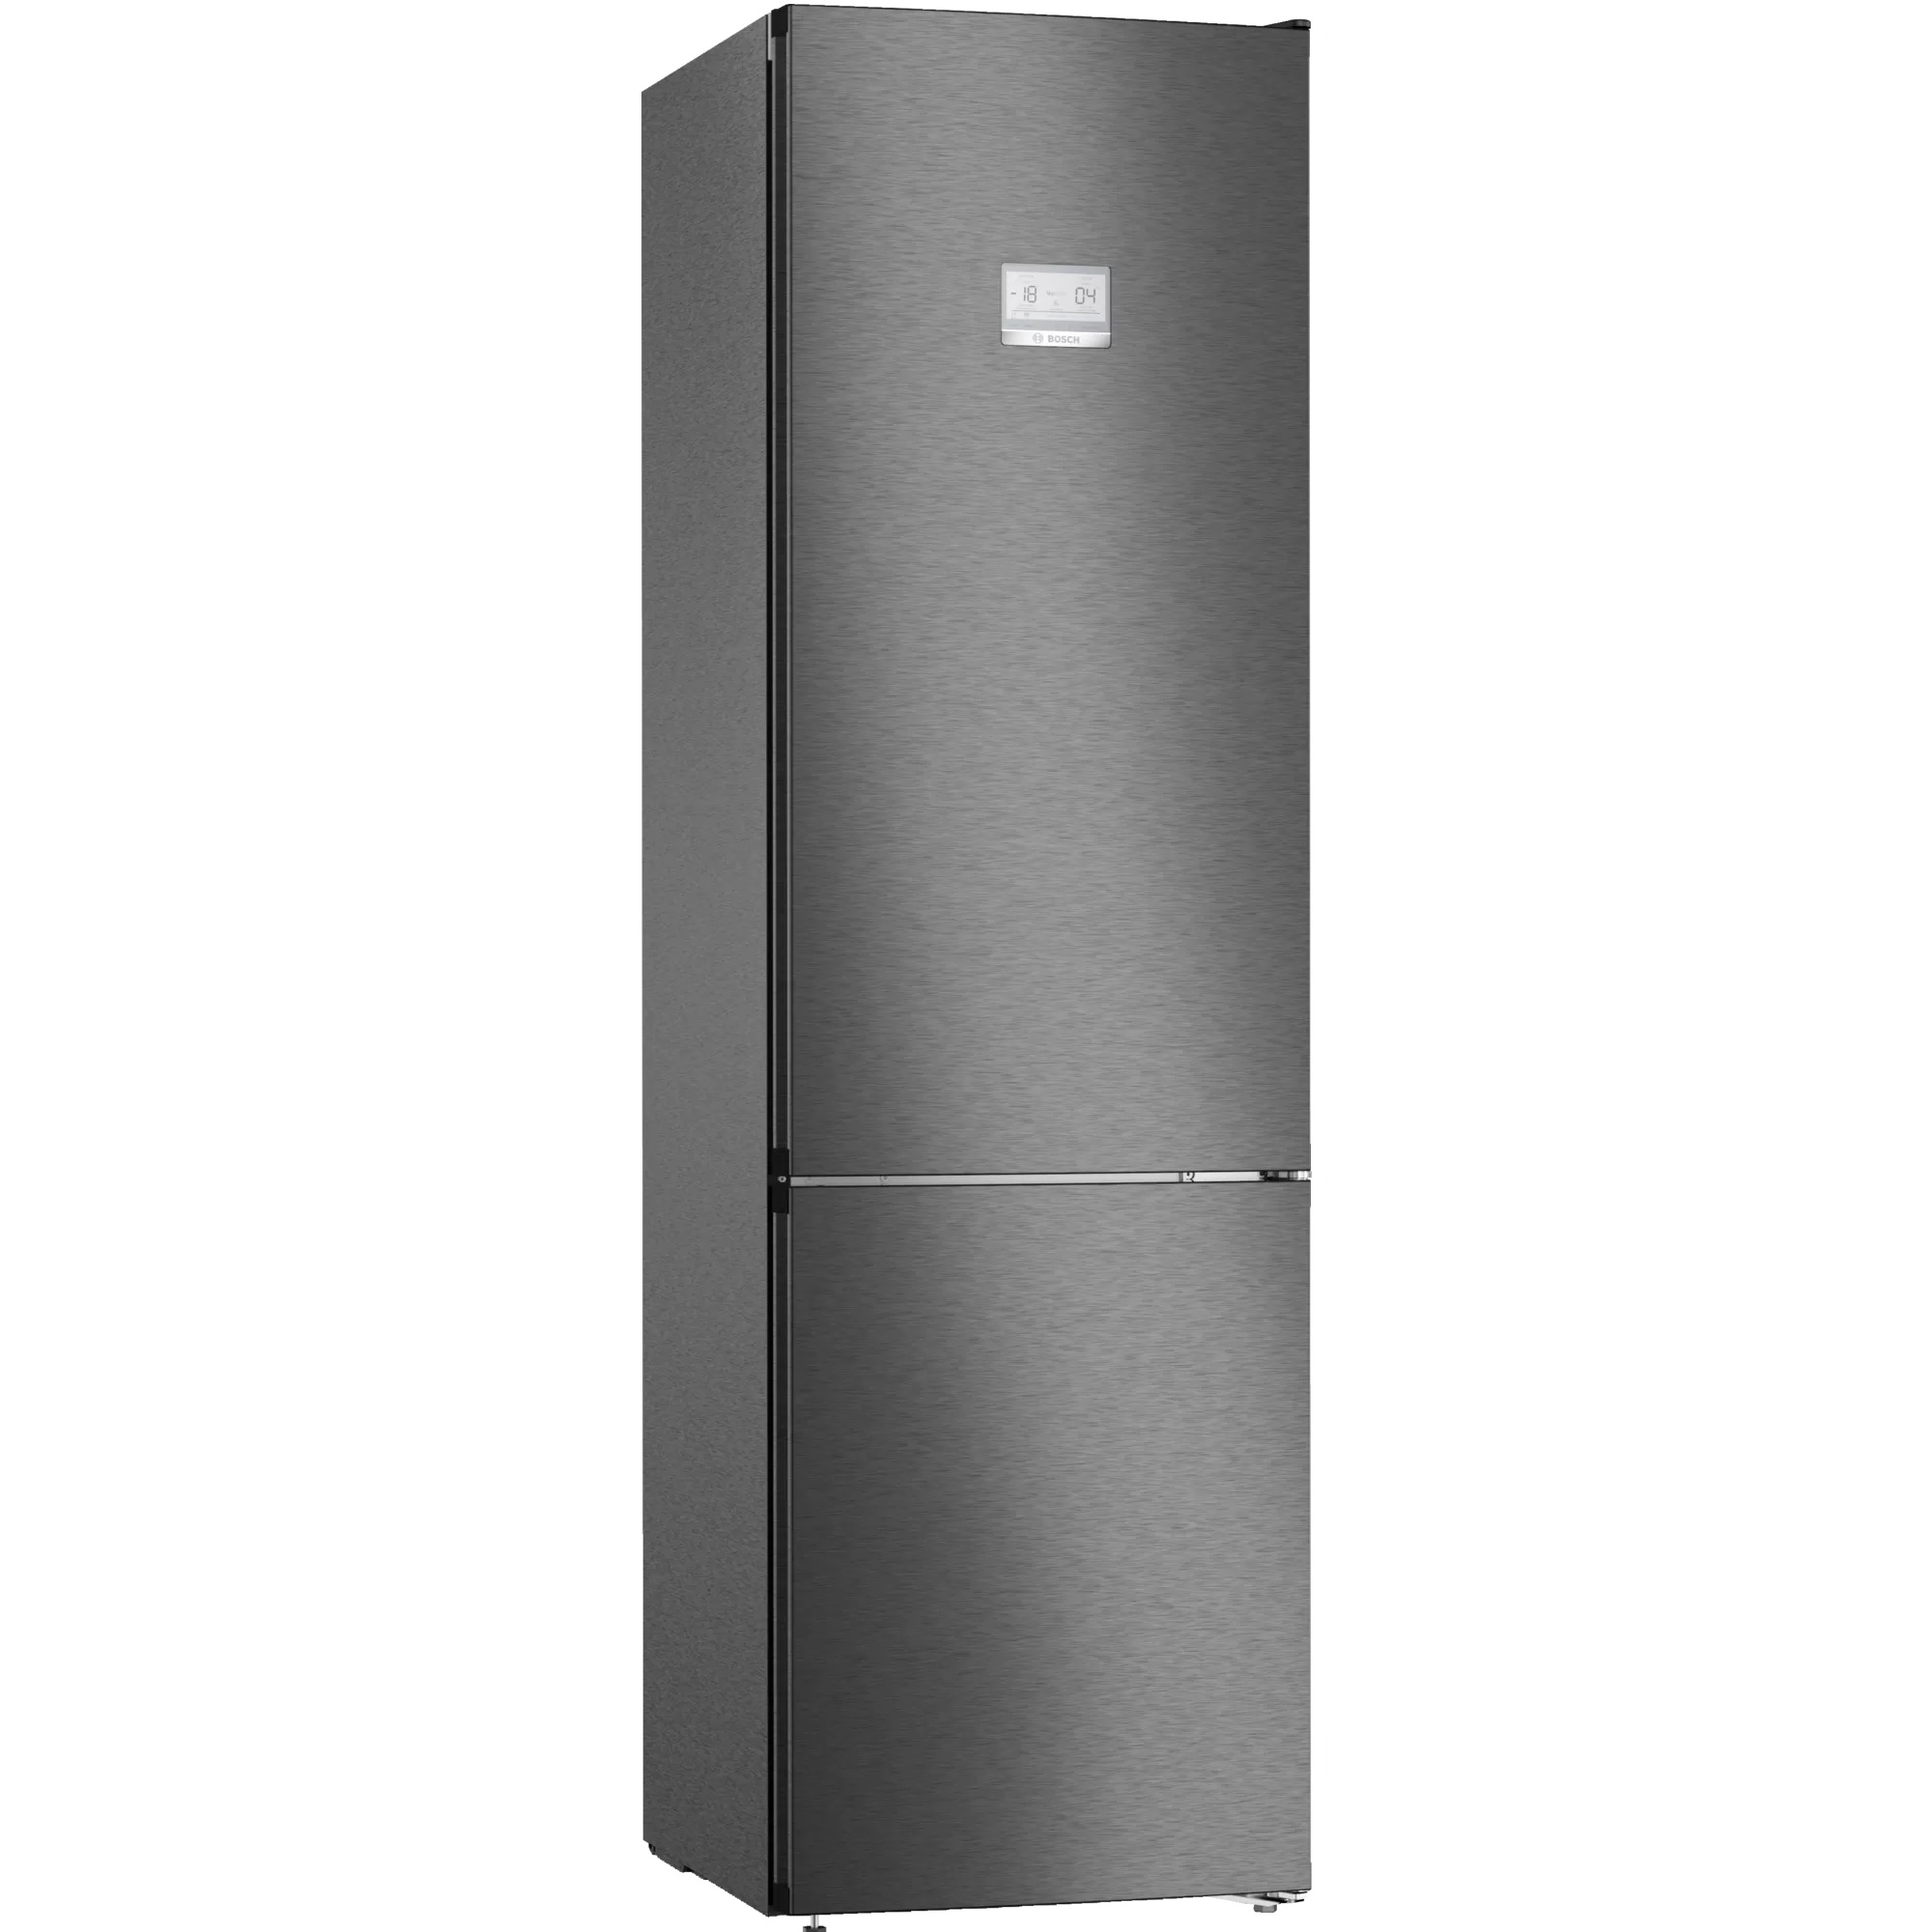 Холодильники no frost купить в москве. Холодильник LG DOORCOOLING+ ga-b509clwl. Bosch kgn39ax32r. Холодильник LG ga-b509clcl графит. LG DOORCOOLING+ ga-b509clwl.